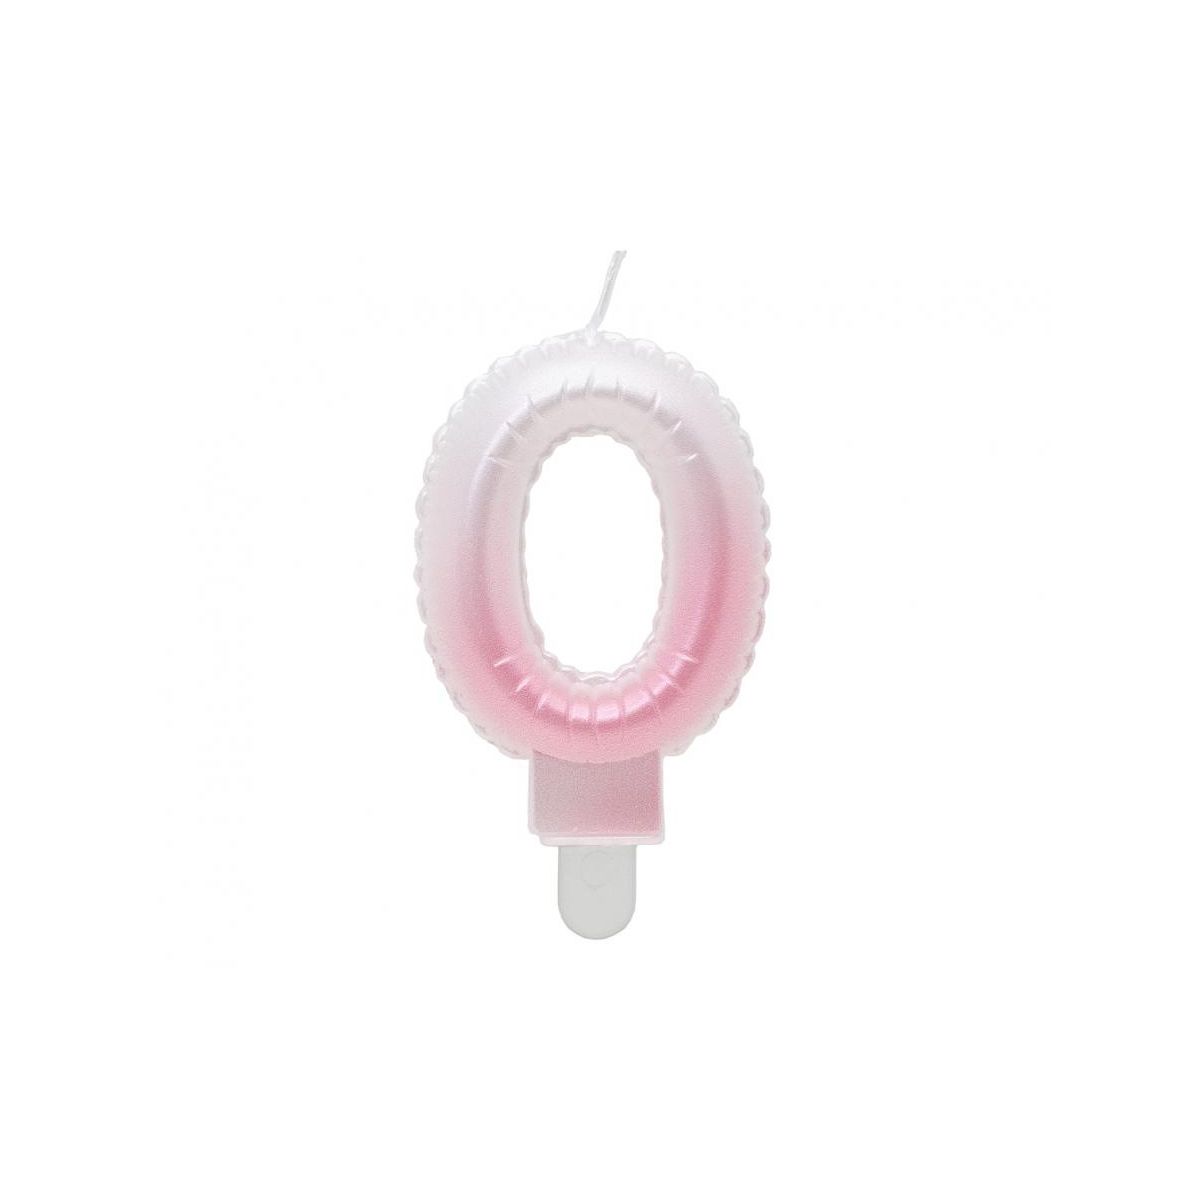 Świeczka urodzinowa cyferka 0, ombre, perłowa biało-różowa, 7 cm Godan (SF-PBR0)